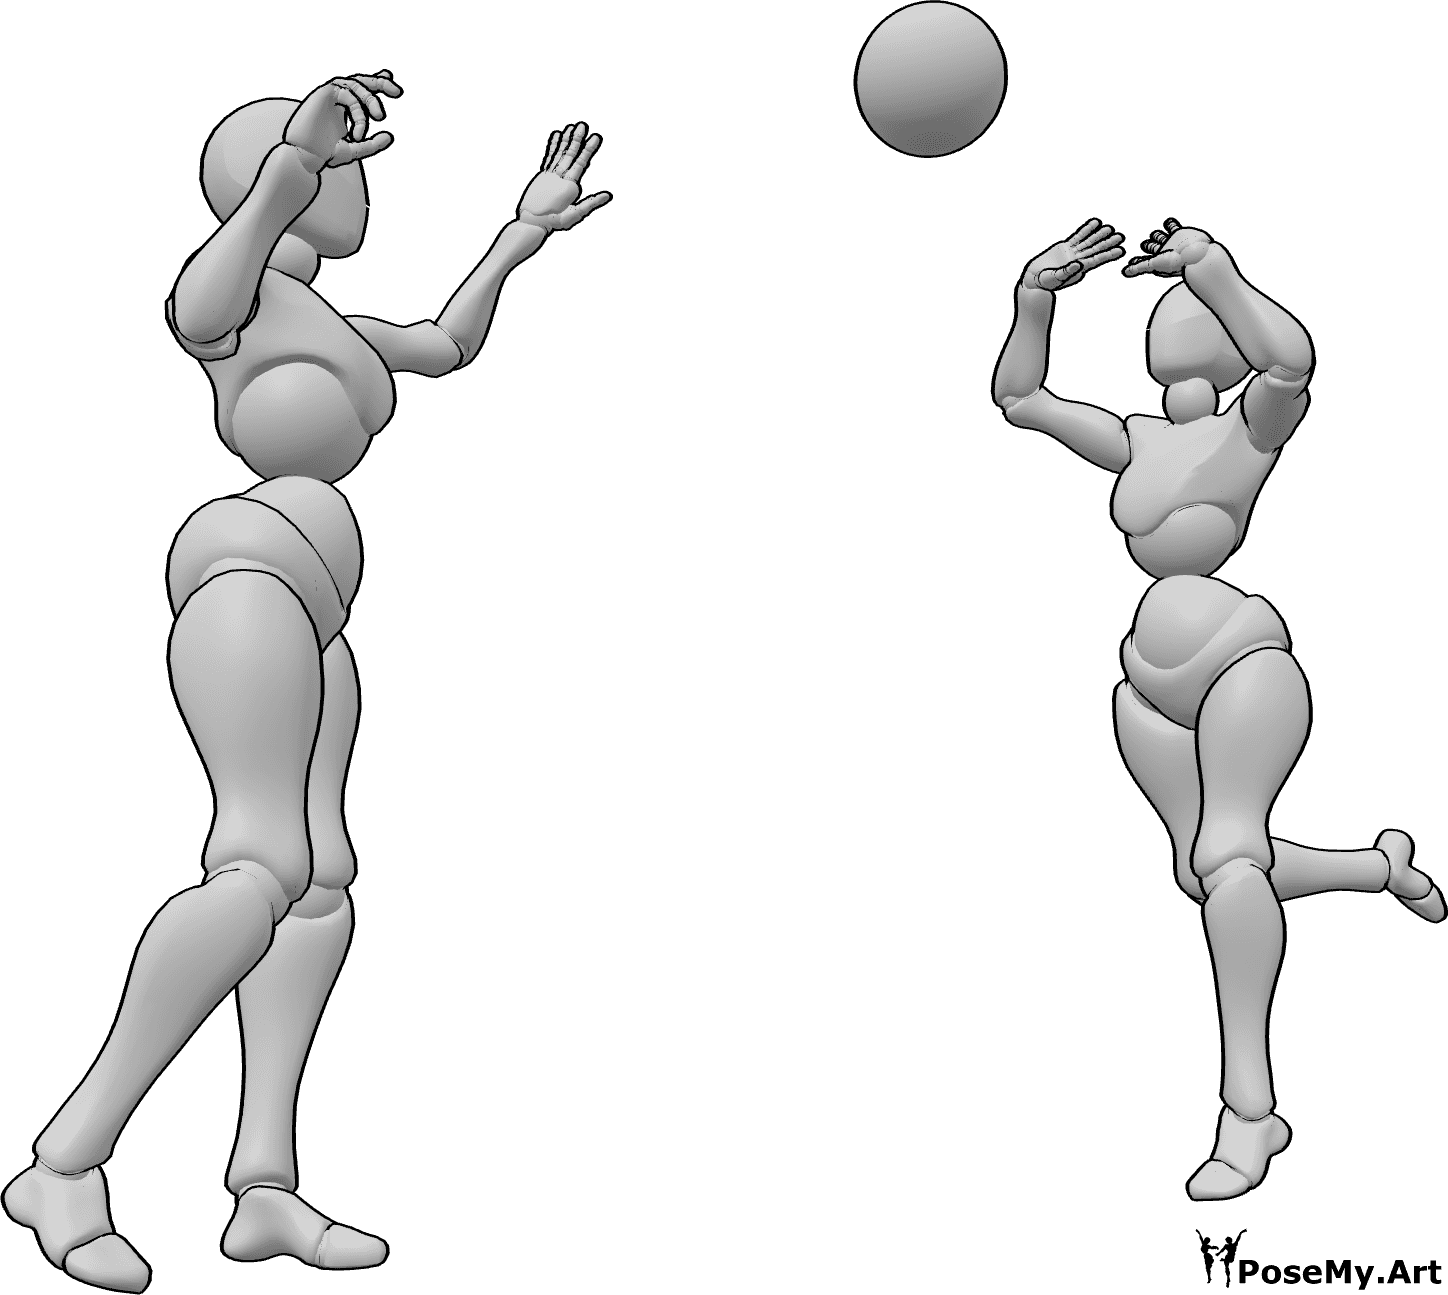 Référence des poses- Pose de femmes lançant un ballon - Deux femmes jouent avec un ballon et se le passent l'une à l'autre.